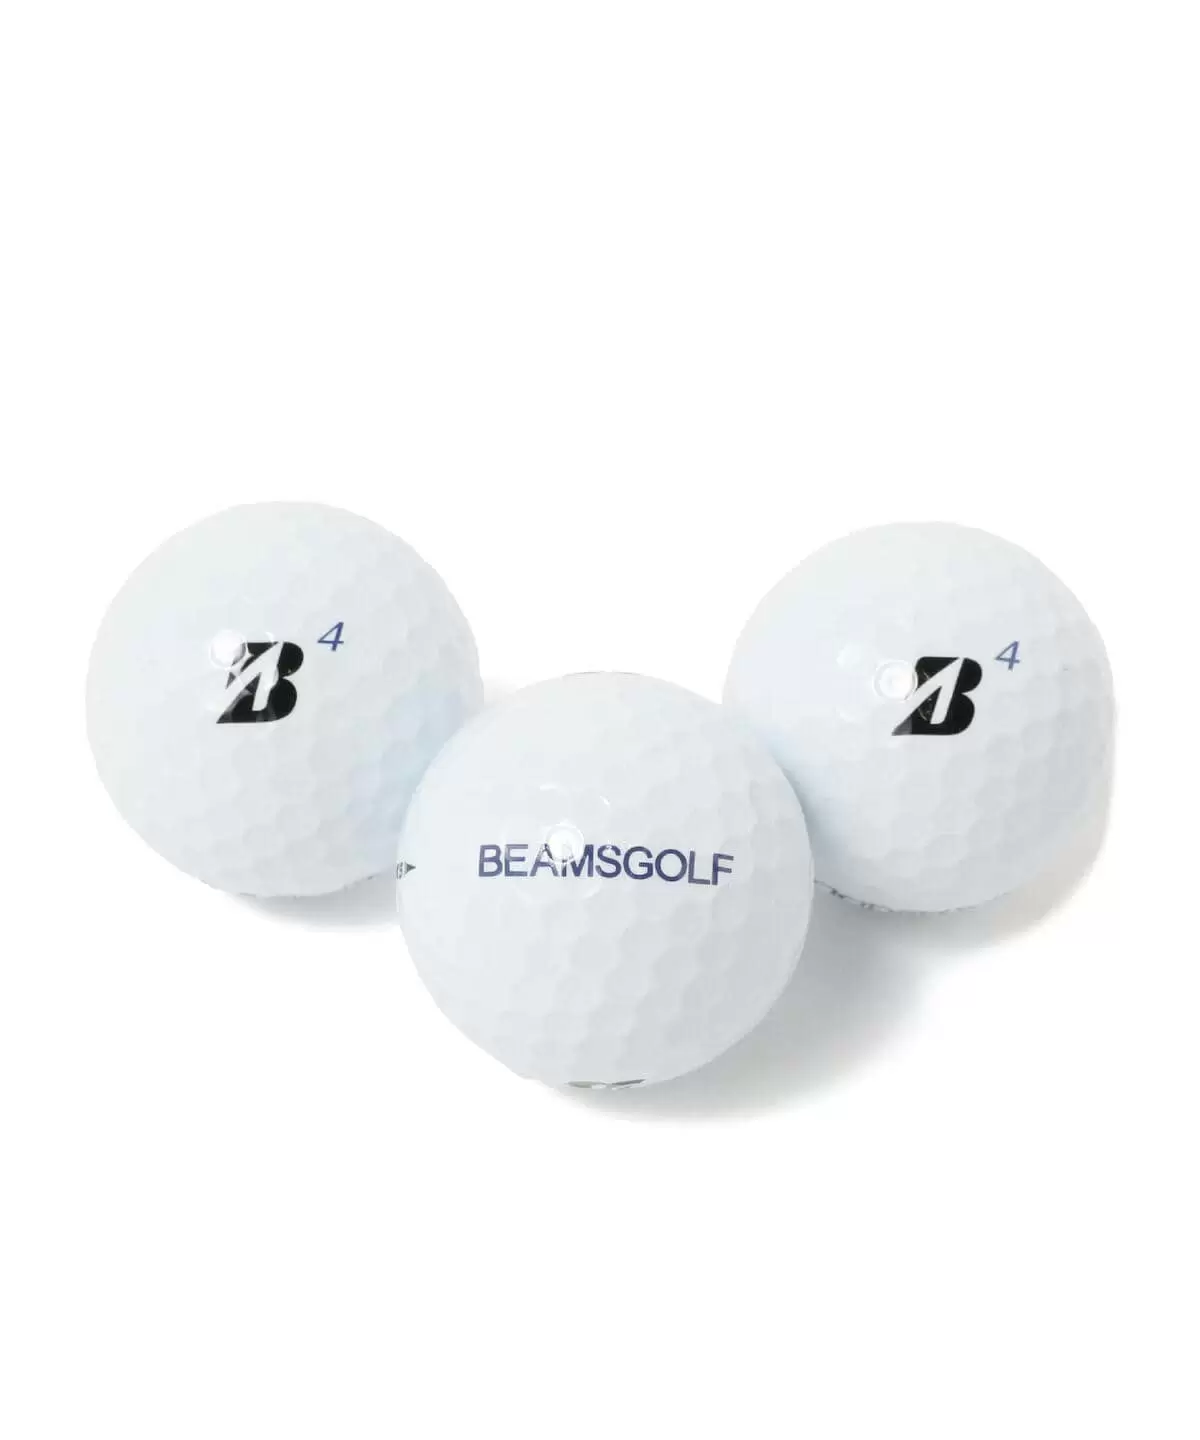 ビームスゴルフ Bridgestone Golf Beams Golf 別注 Tour B Xs ゴルフボール ゴルフボール ゴルフクラブ価格比較ランキング ごるトク